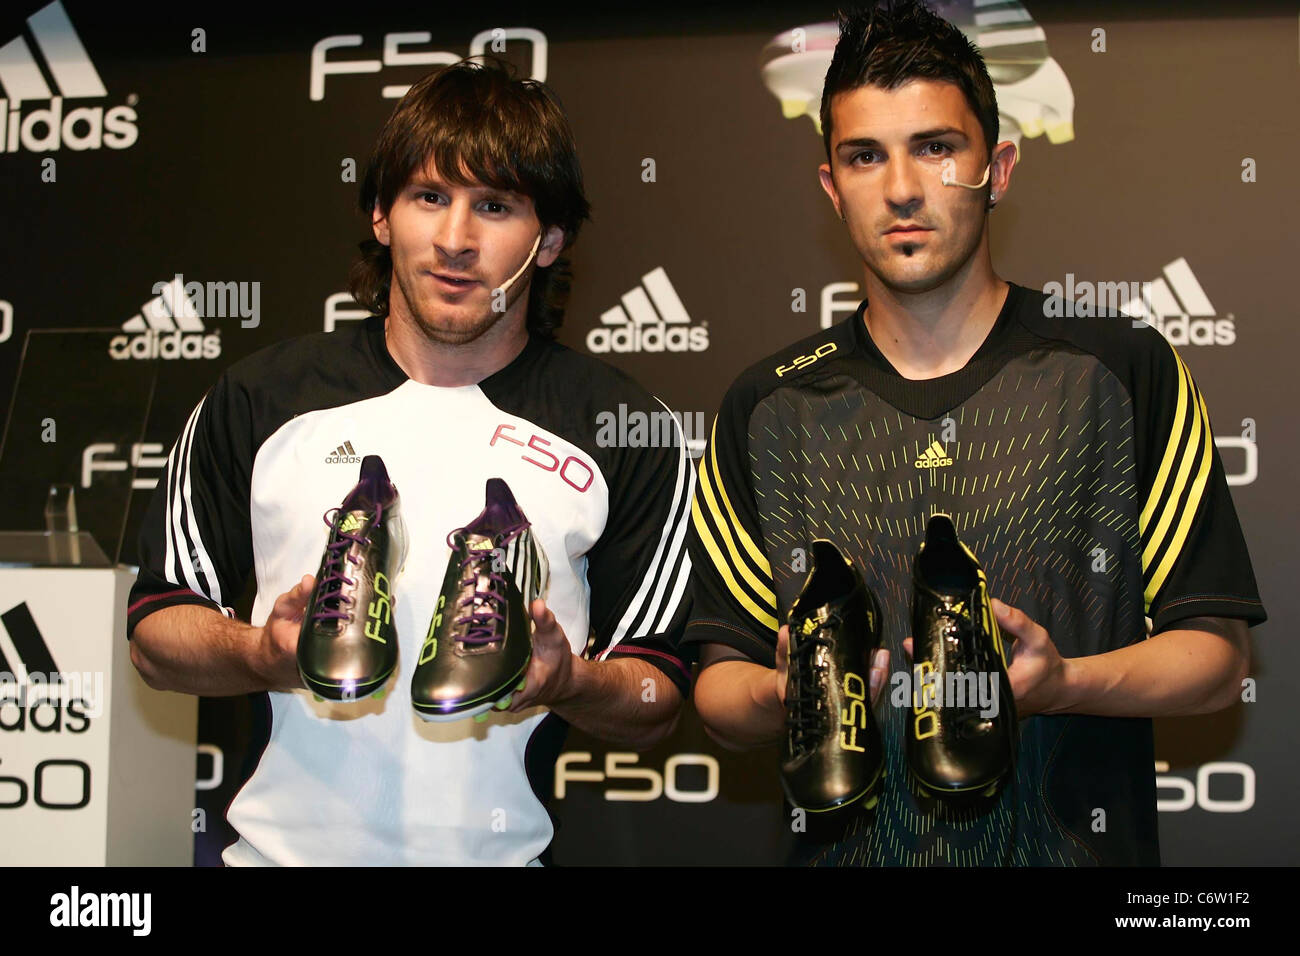 David y Lionel Messi, conferencia de prensa sobre el lanzamiento de los adidas F50 adZero botas de fútbol en de Fotografía de stock - Alamy